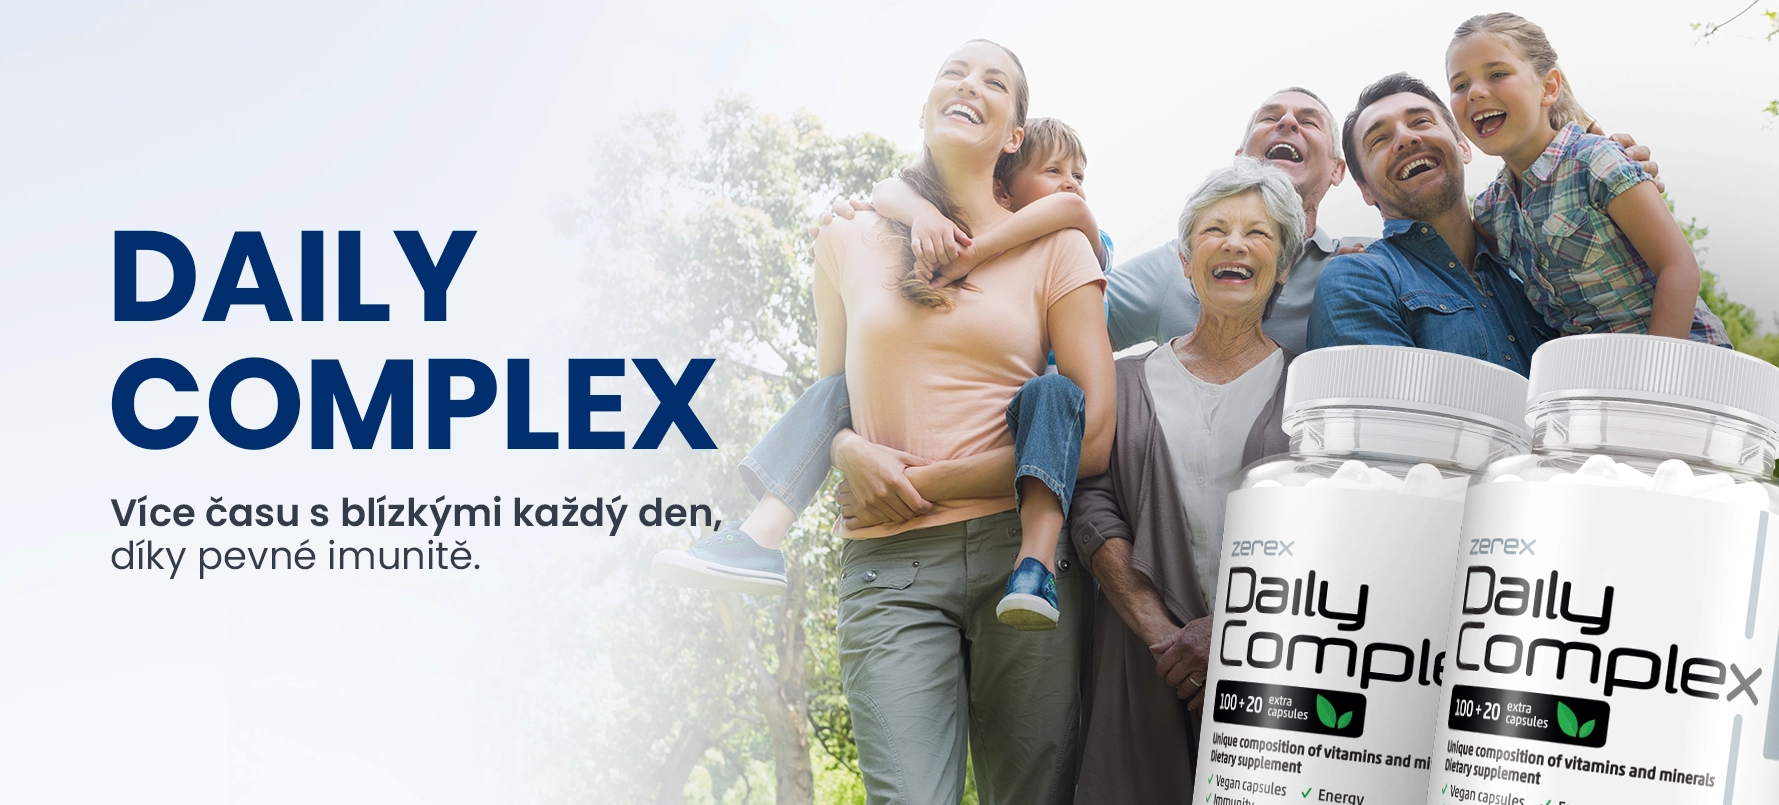 Zerex Daily Complex – posílení imunity